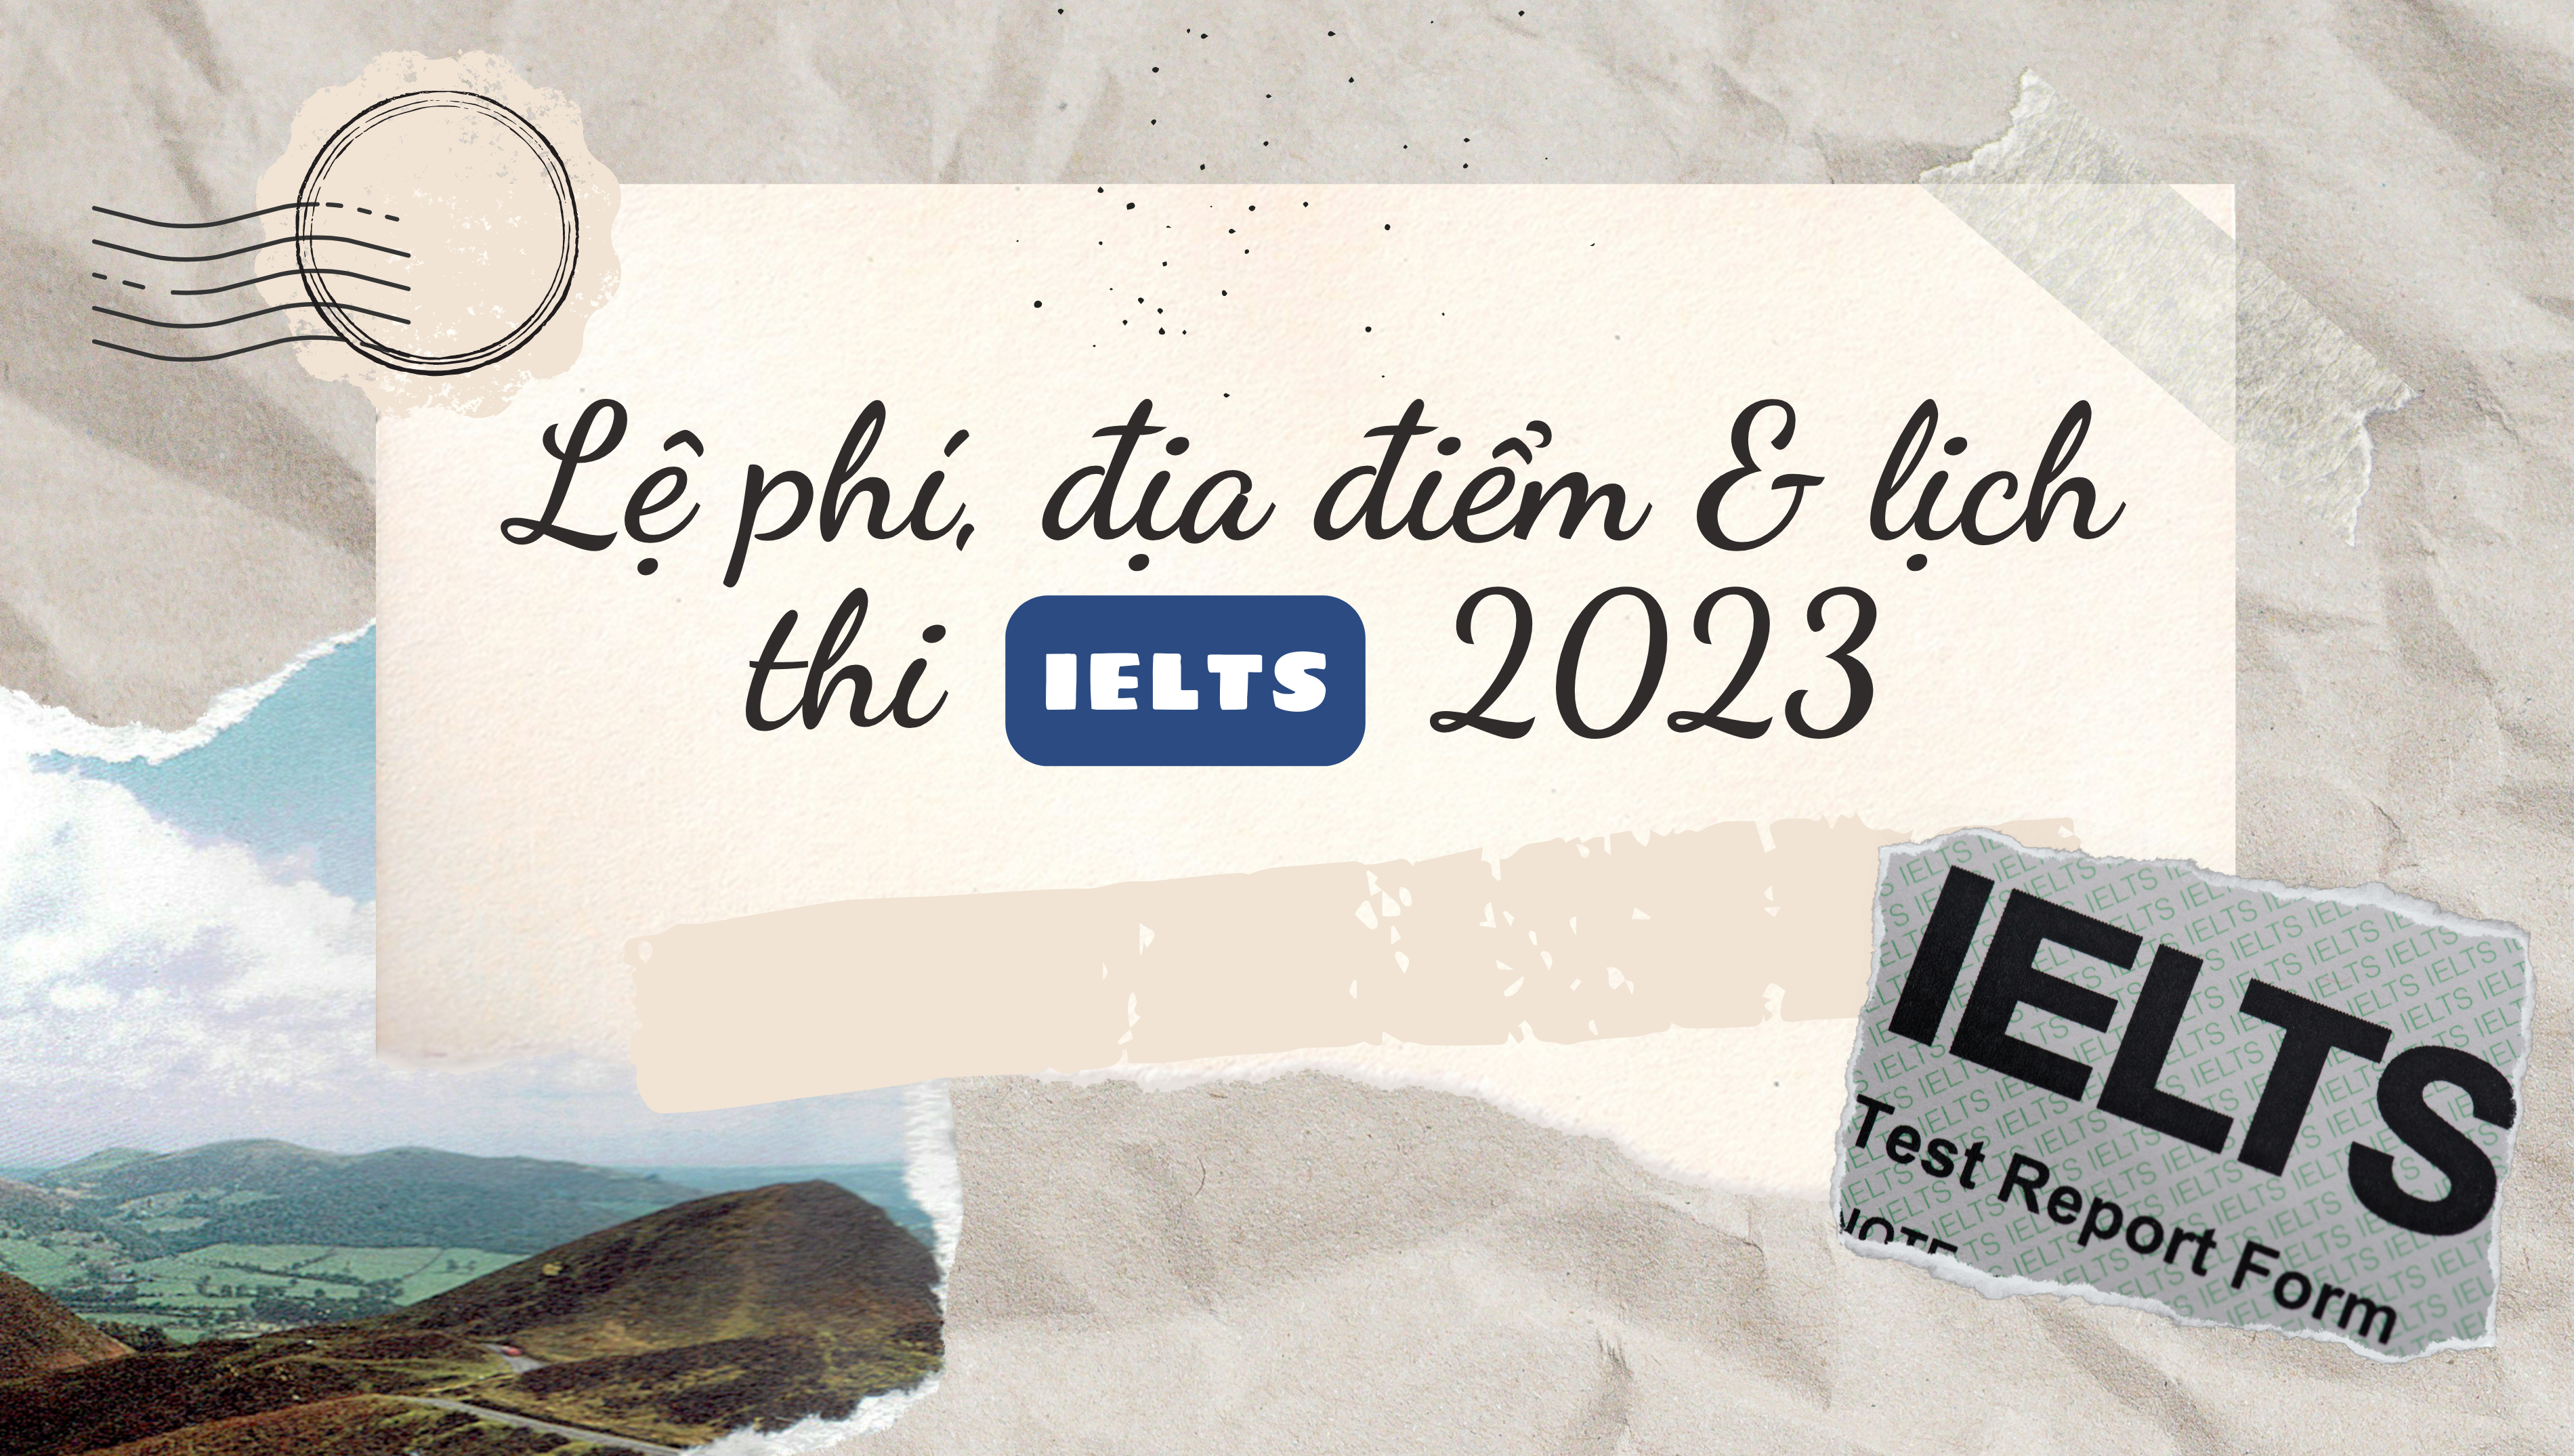 Lệ phí, địa điểm & lịch thi IELTS 2023